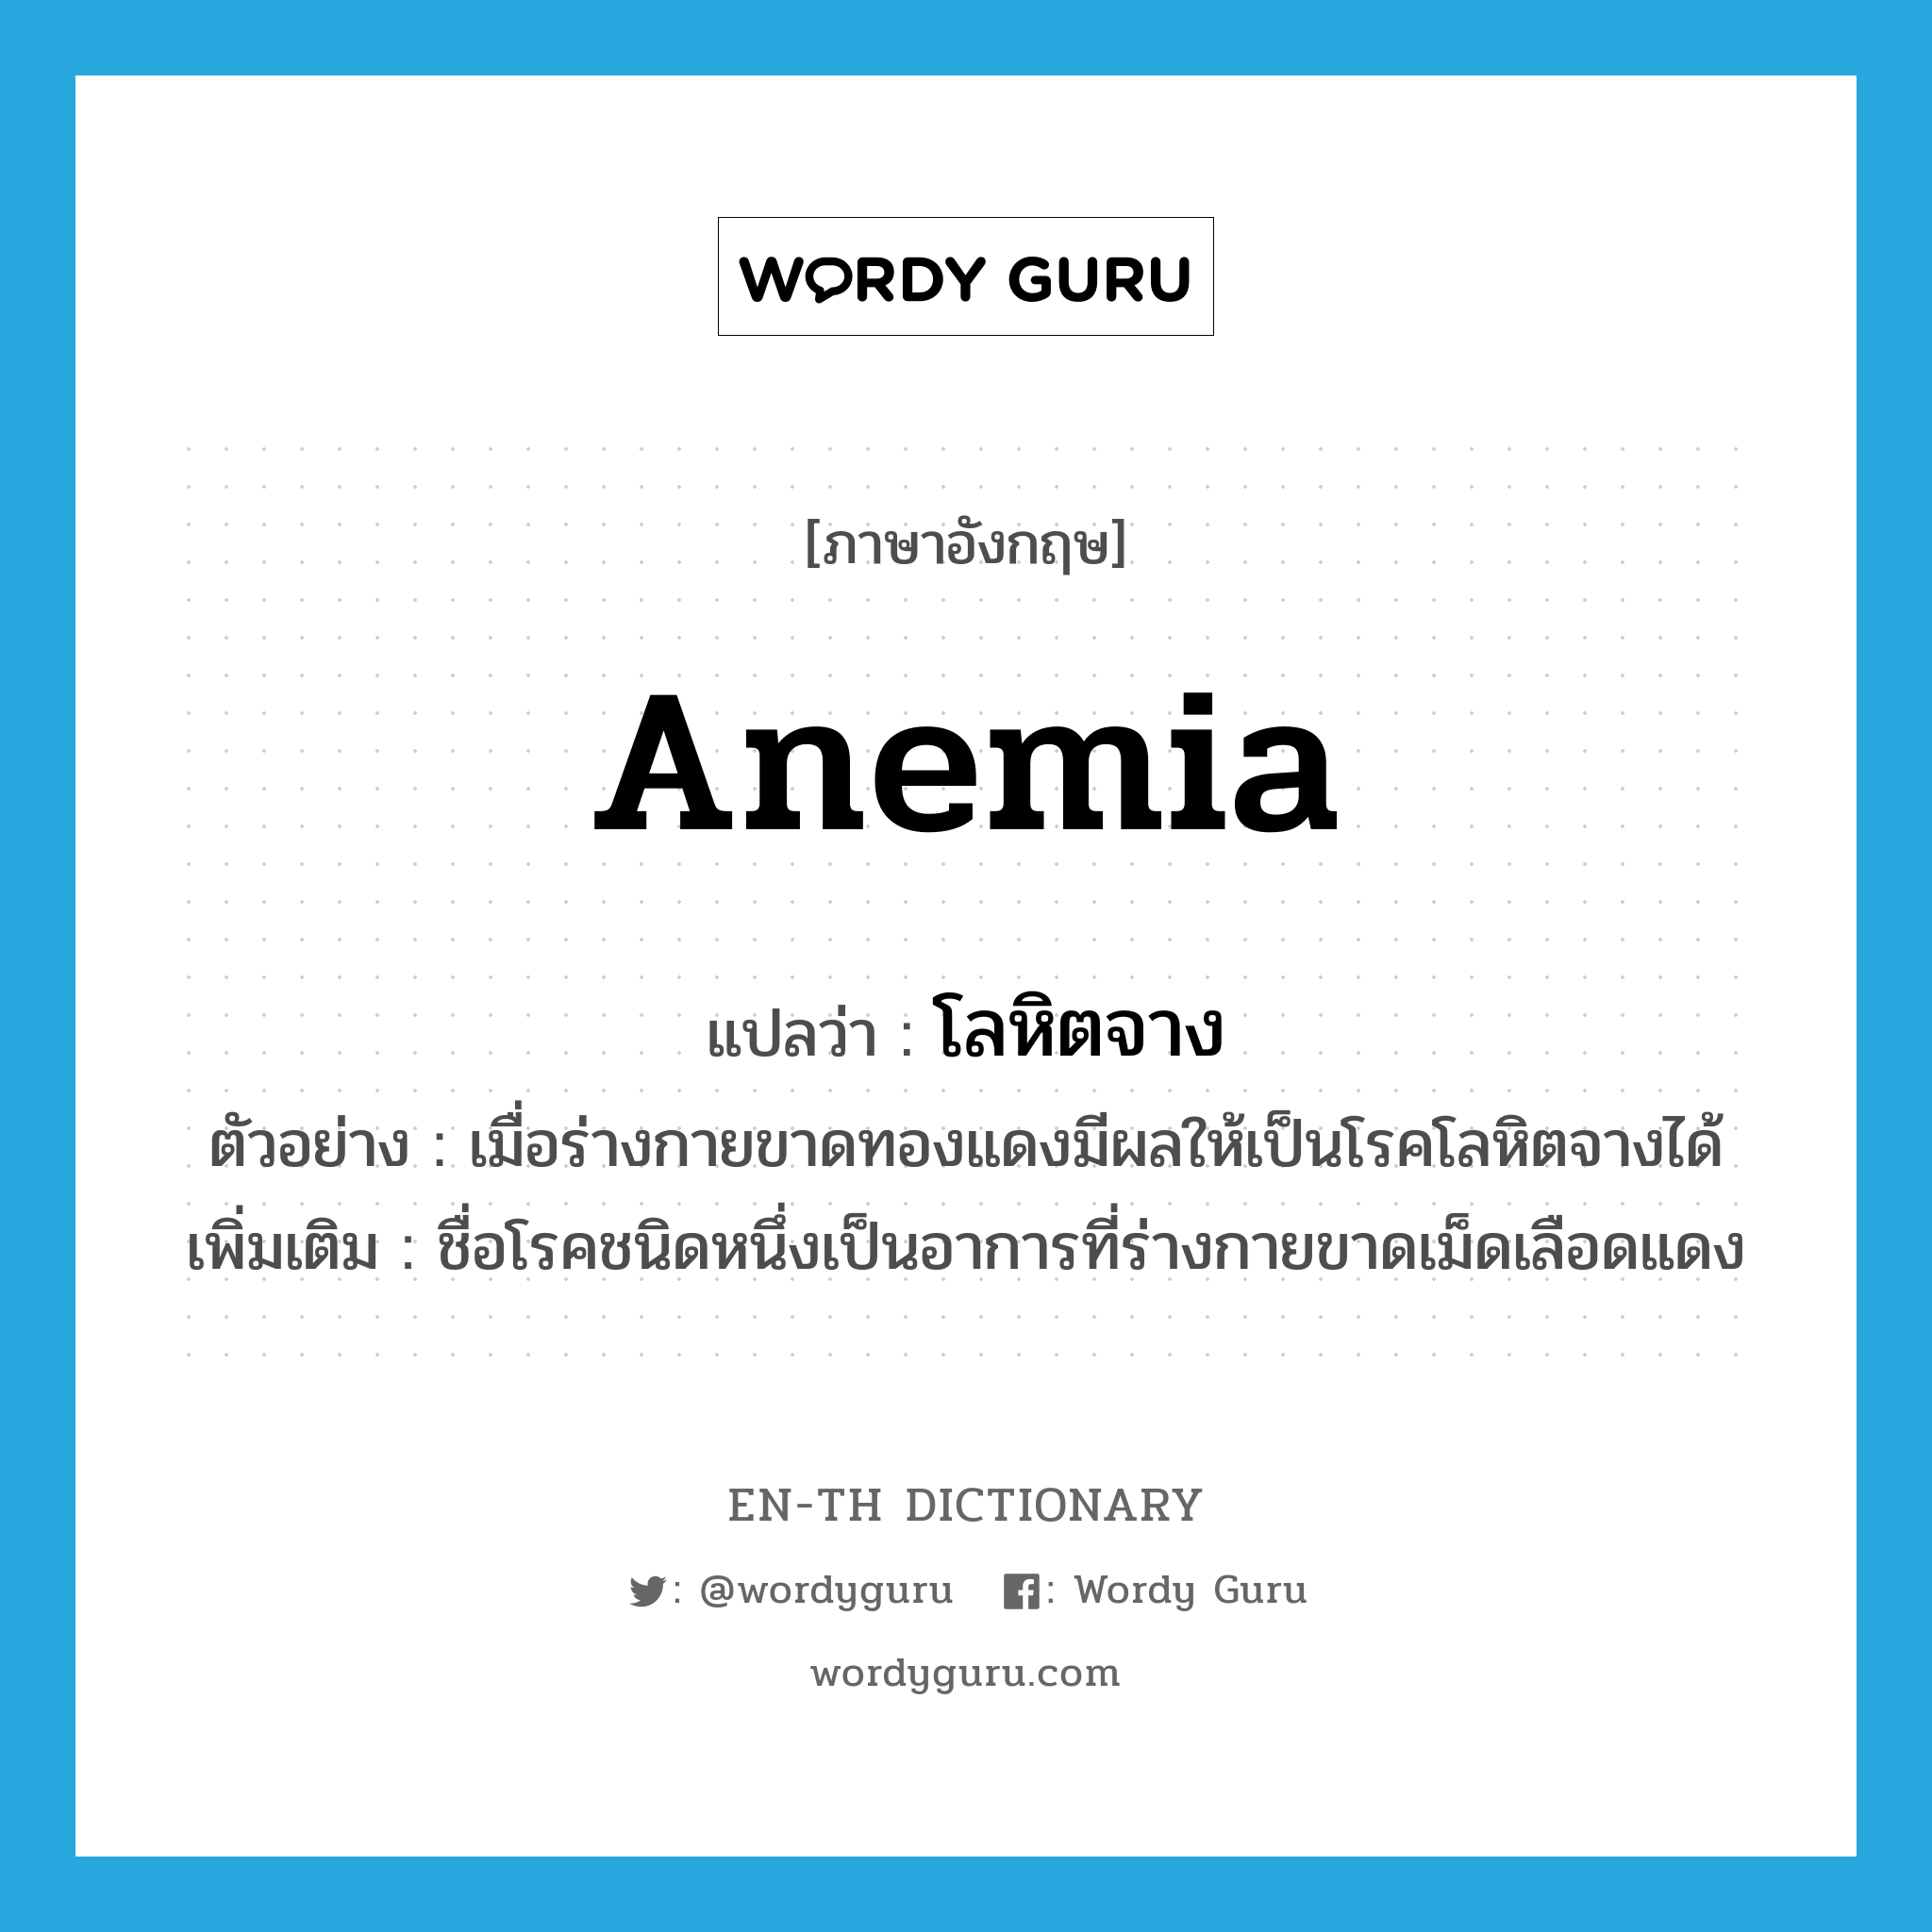 anemia แปลว่า?, คำศัพท์ภาษาอังกฤษ anemia แปลว่า โลหิตจาง ประเภท N ตัวอย่าง เมื่อร่างกายขาดทองแดงมีผลให้เป็นโรคโลหิตจางได้ เพิ่มเติม ชื่อโรคชนิดหนึ่งเป็นอาการที่ร่างกายขาดเม็ดเลือดแดง หมวด N